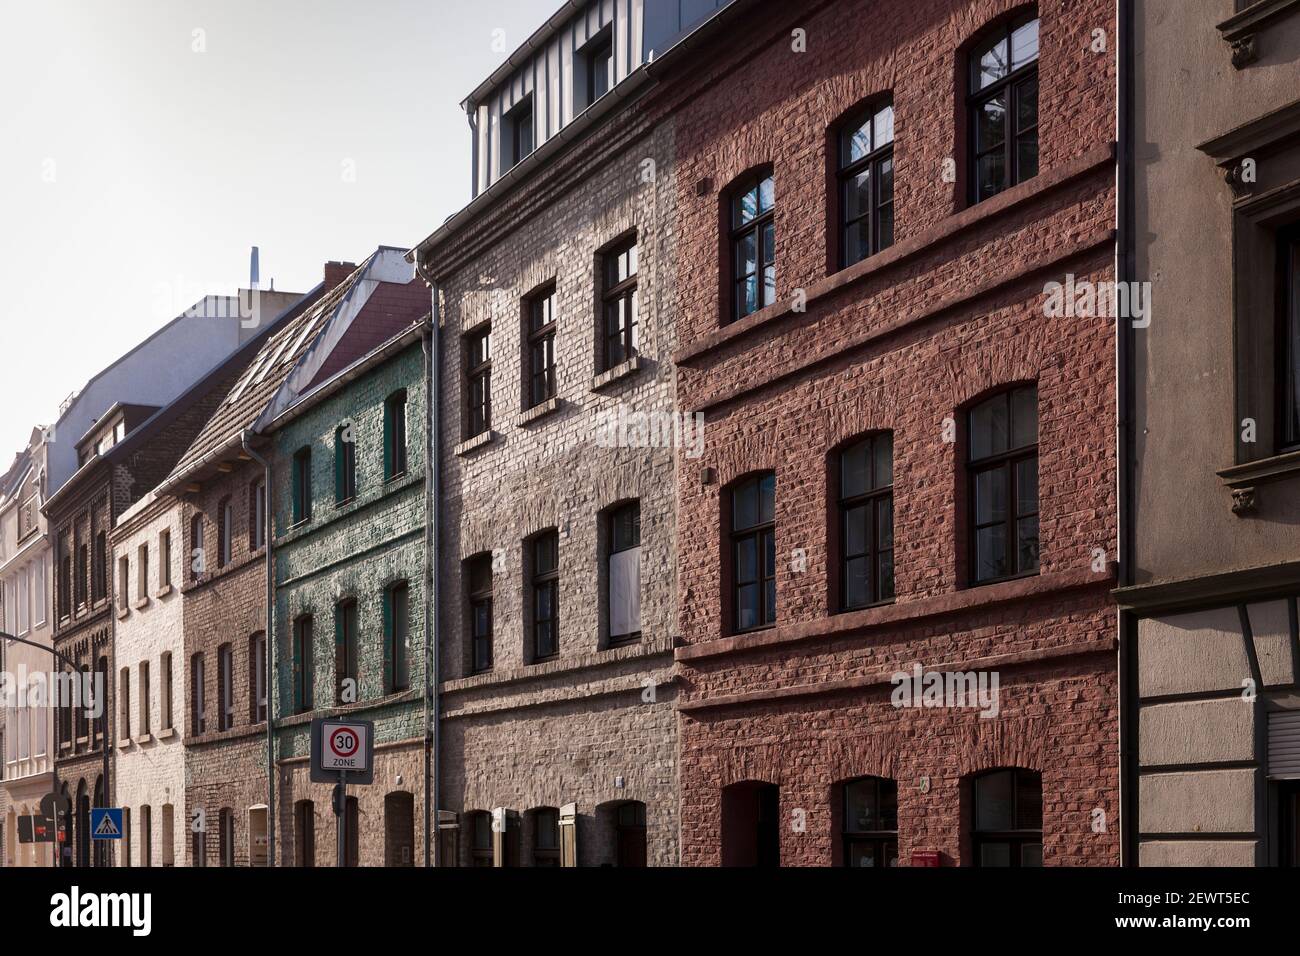 Altbauten an der Alteburger Straße 182 - 190 im Stadtteil Bayenthal, erbaut um 1860, Köln, Deutschland. Altbauten an der Alteburger Straße 182 Stockfoto